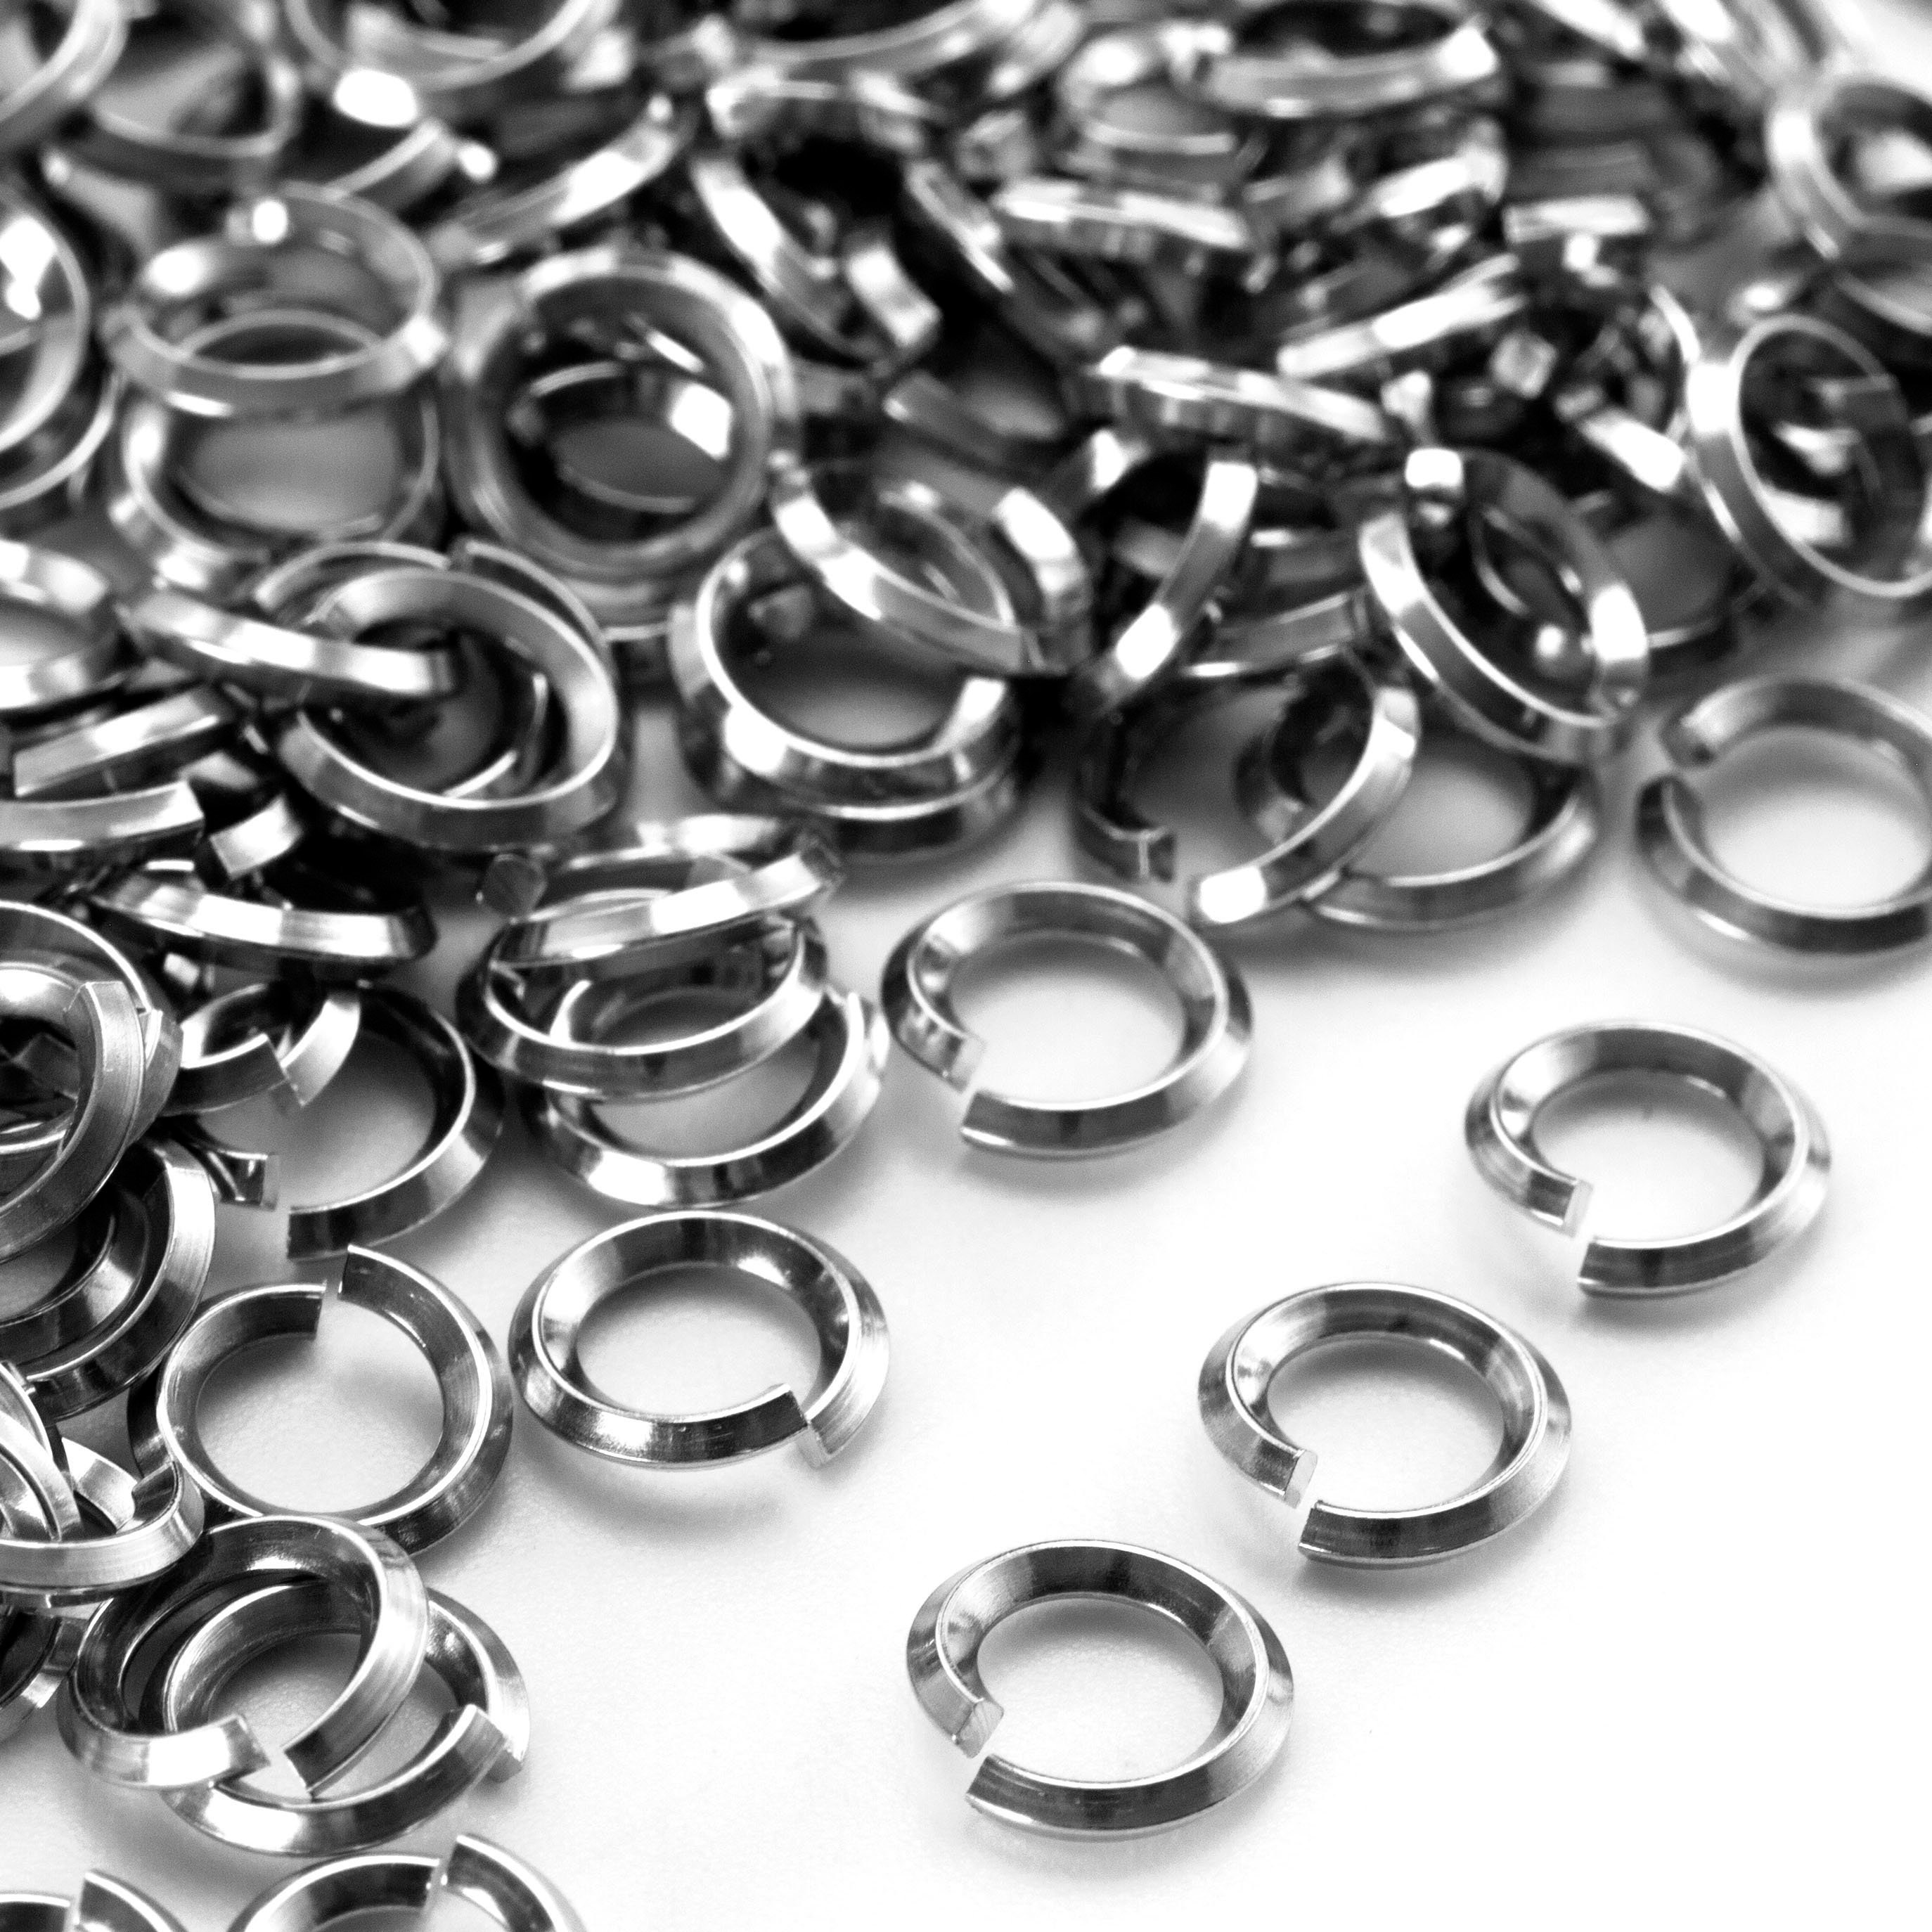 Stainless Steel 7mm I.D. 16 Gauge Jump Rings, 1/4 oz (~26 rings